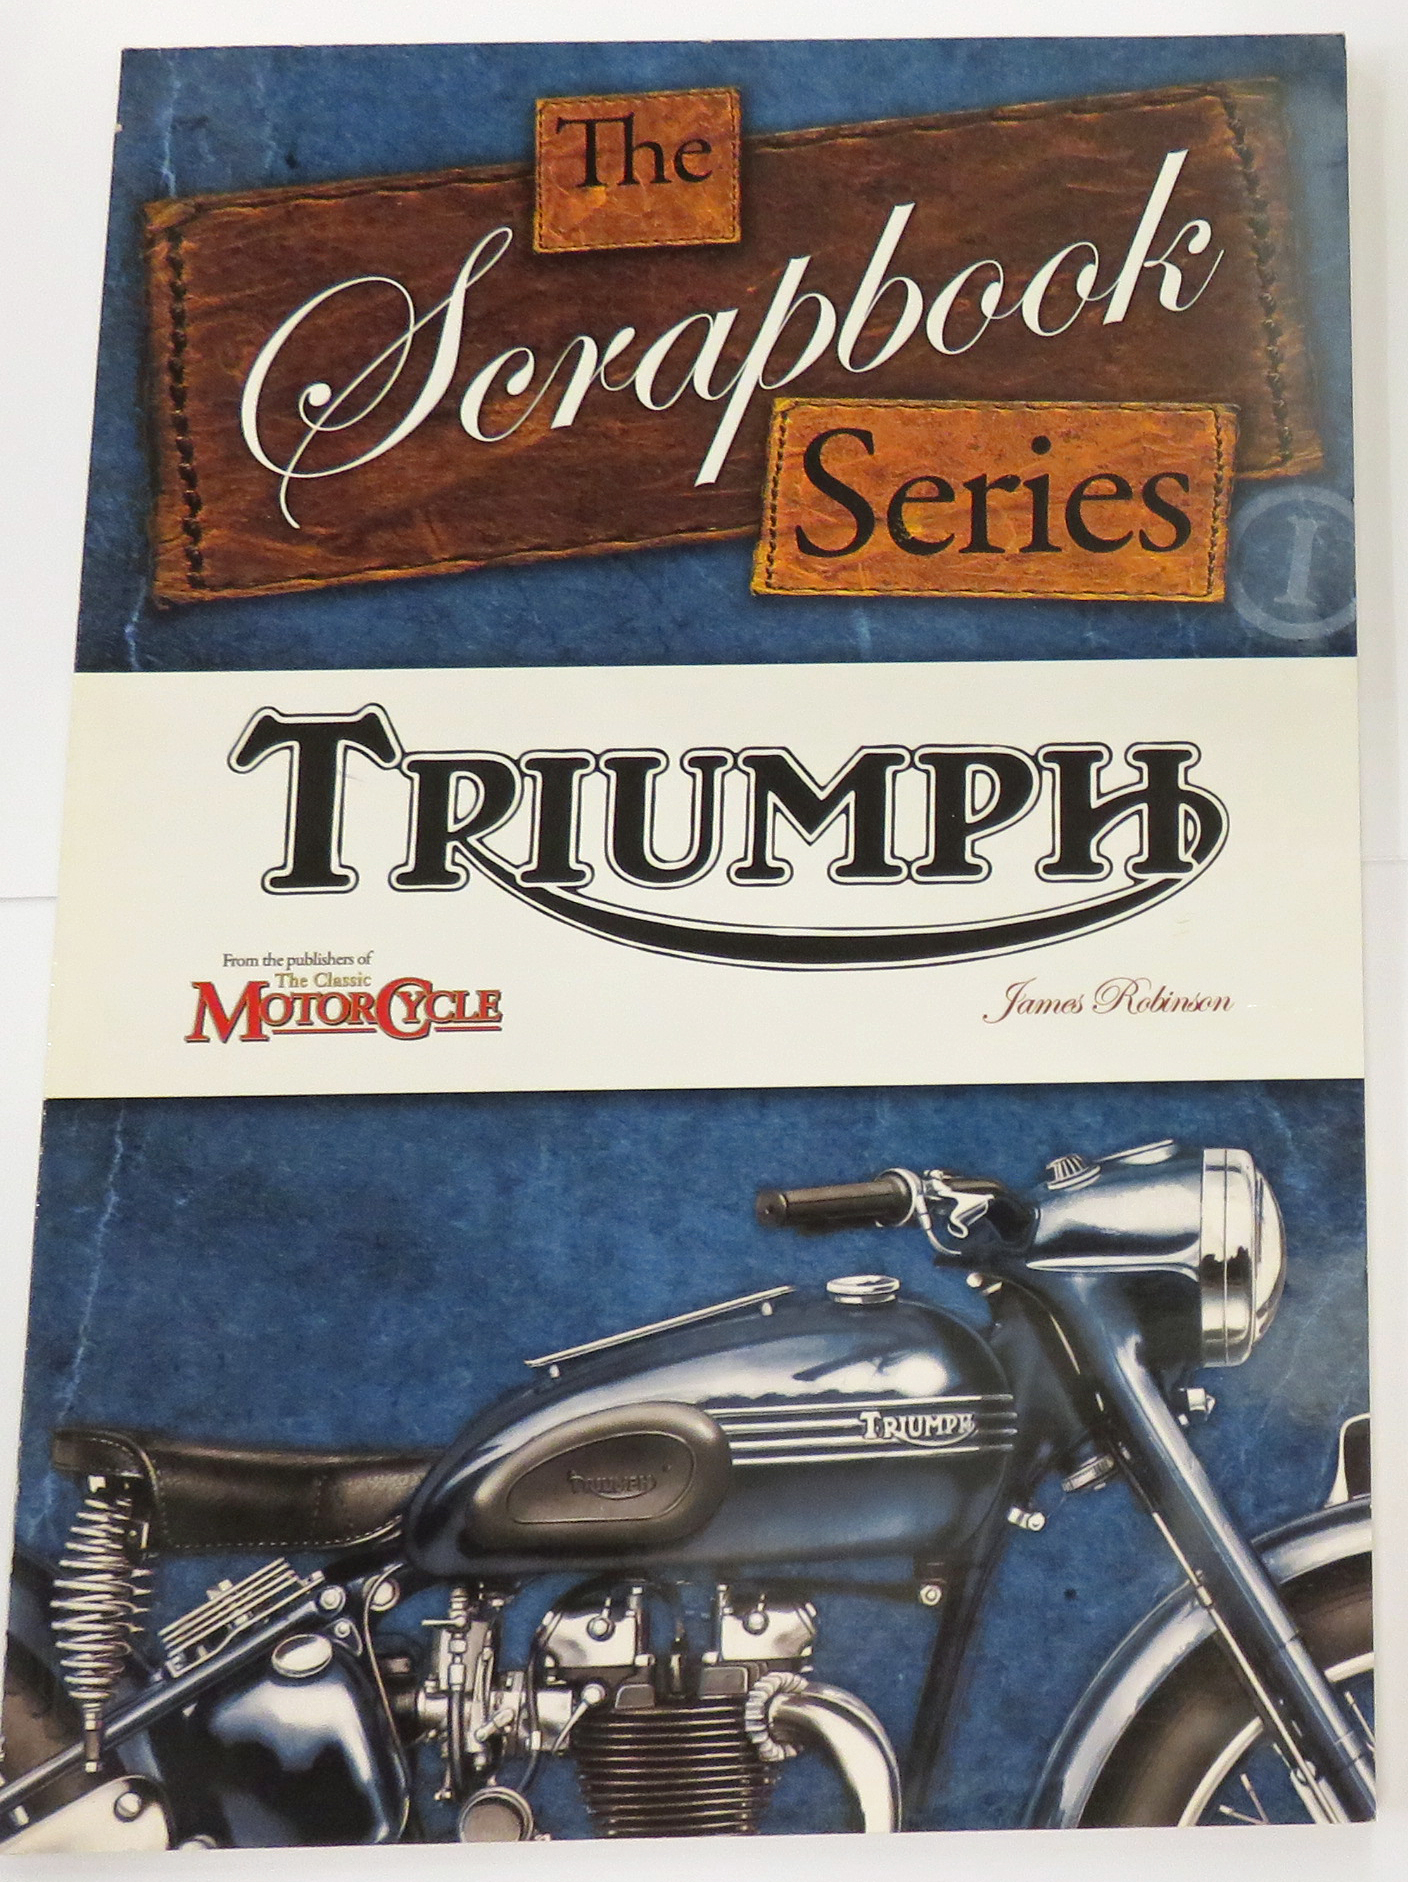 The Scrapbook Series Triumoh 